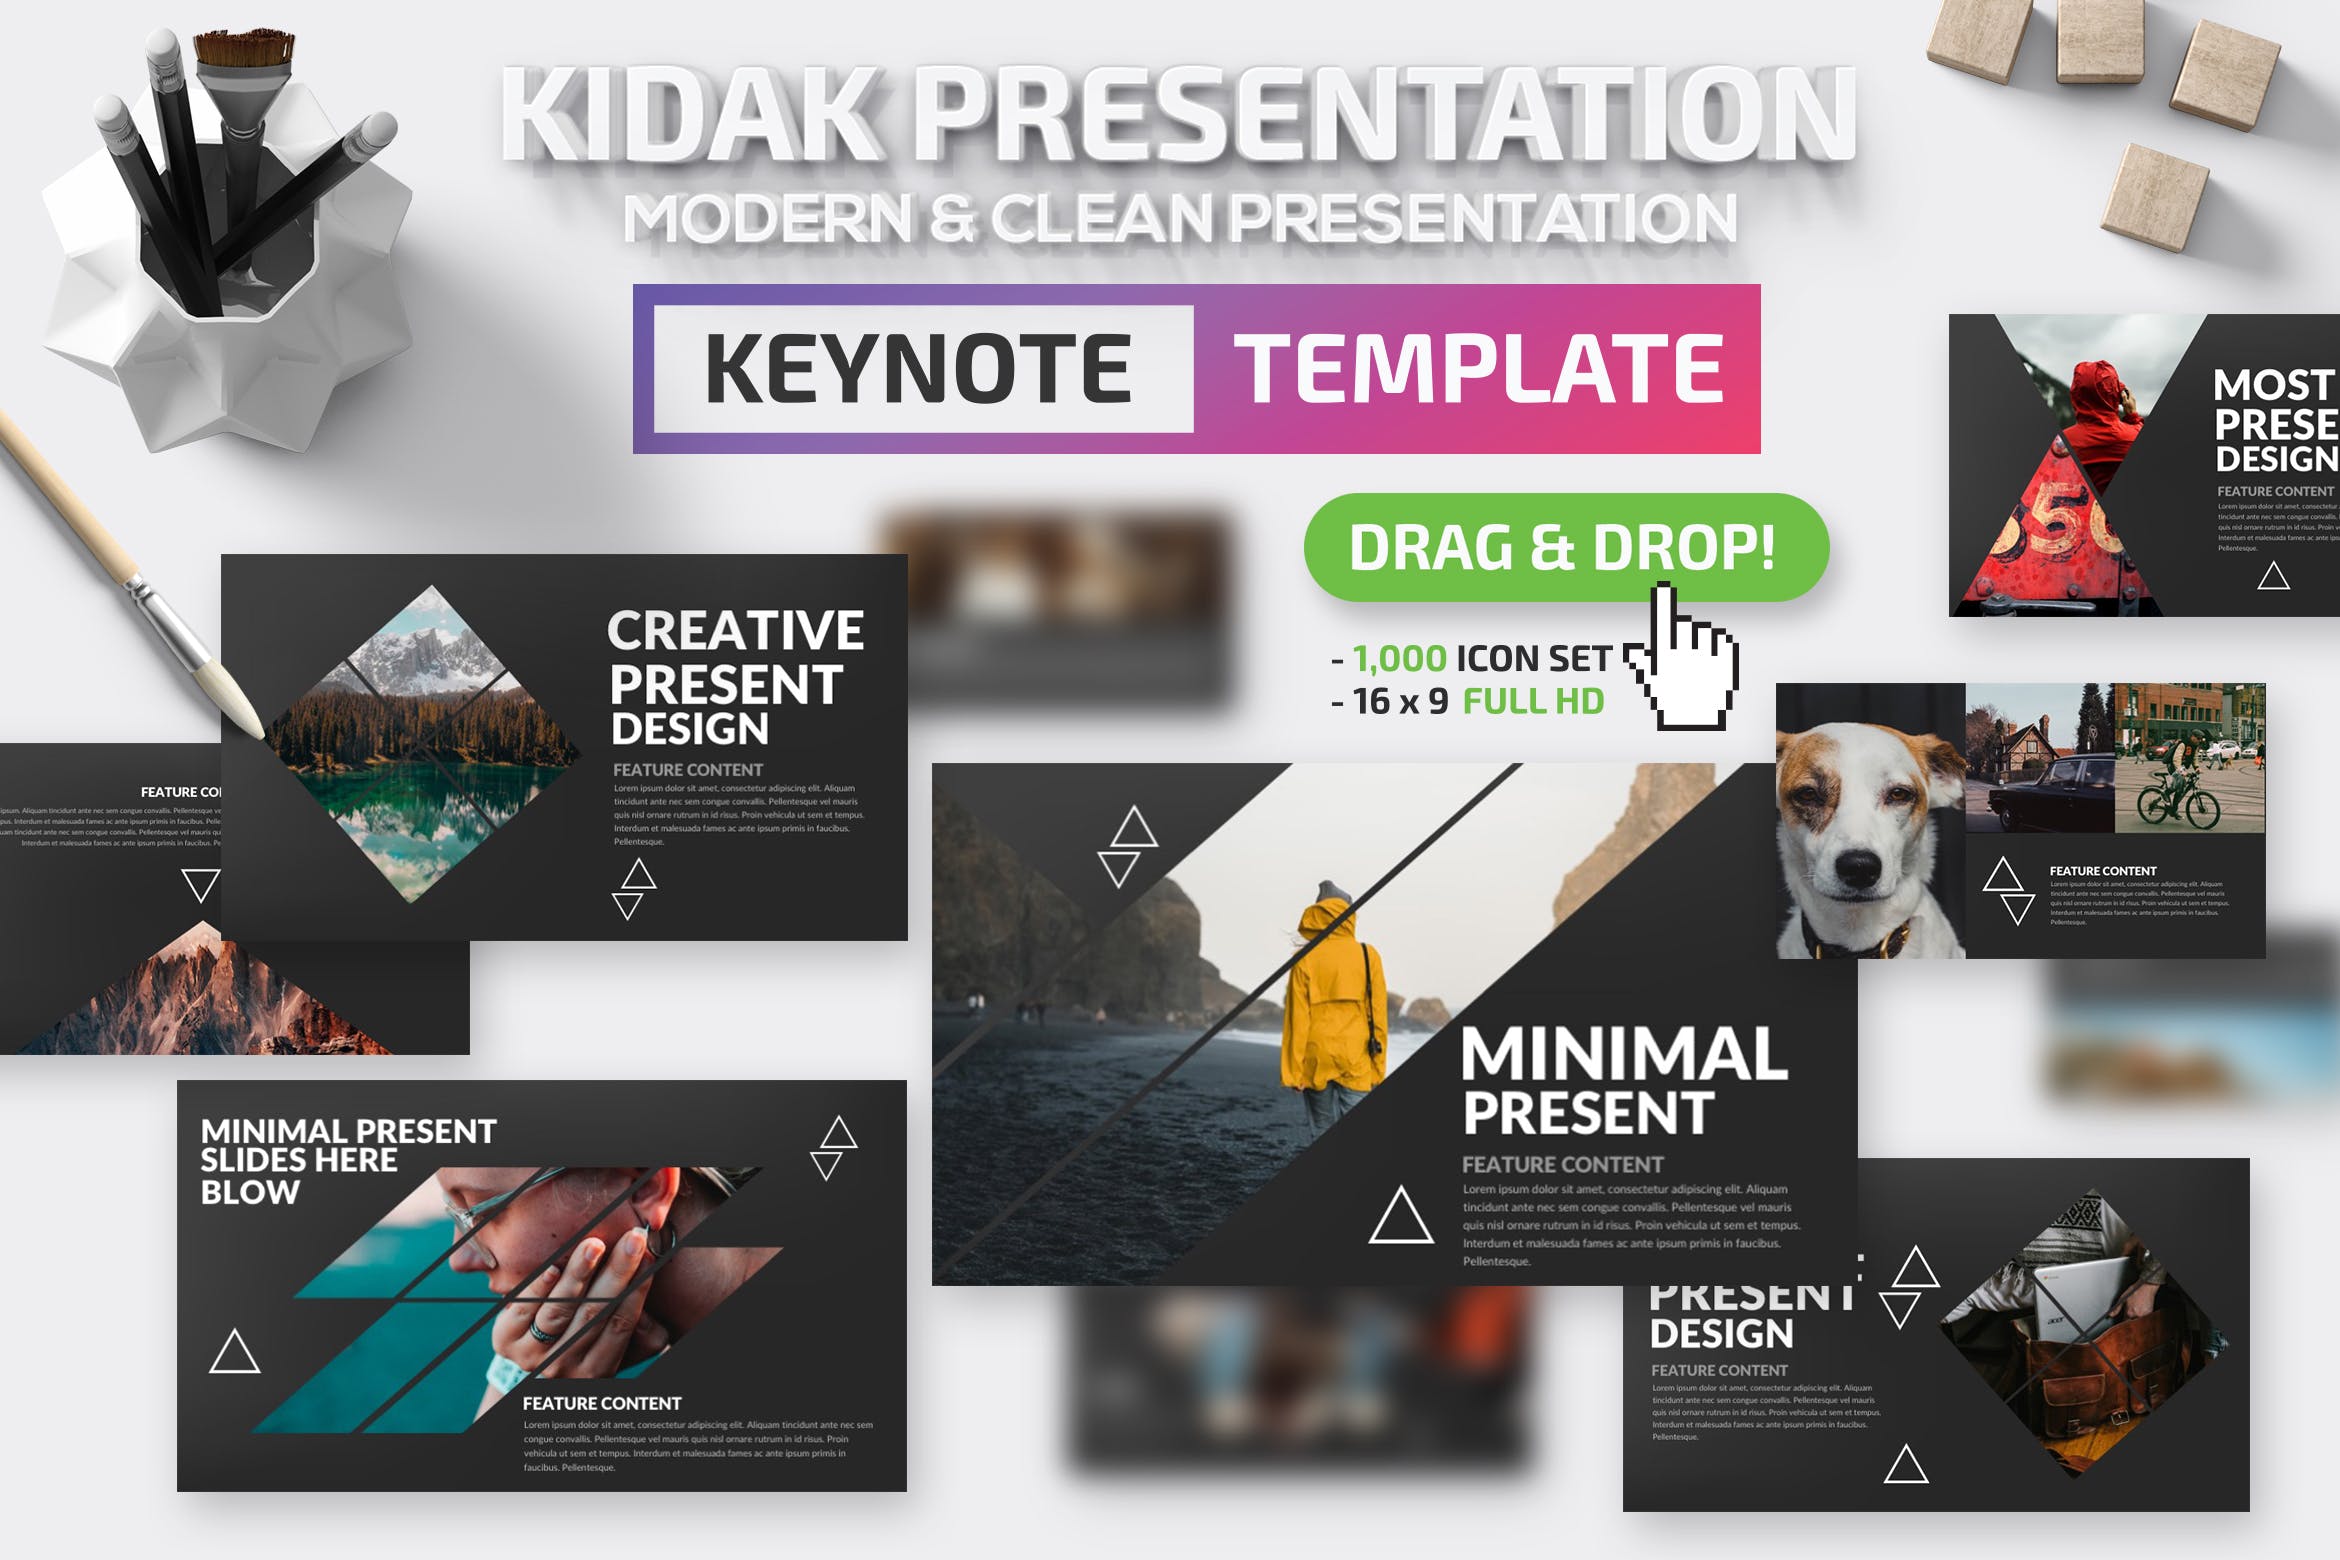 创意旅游摄影主题Keynote幻灯片模板 Kidak Keynote Template插图